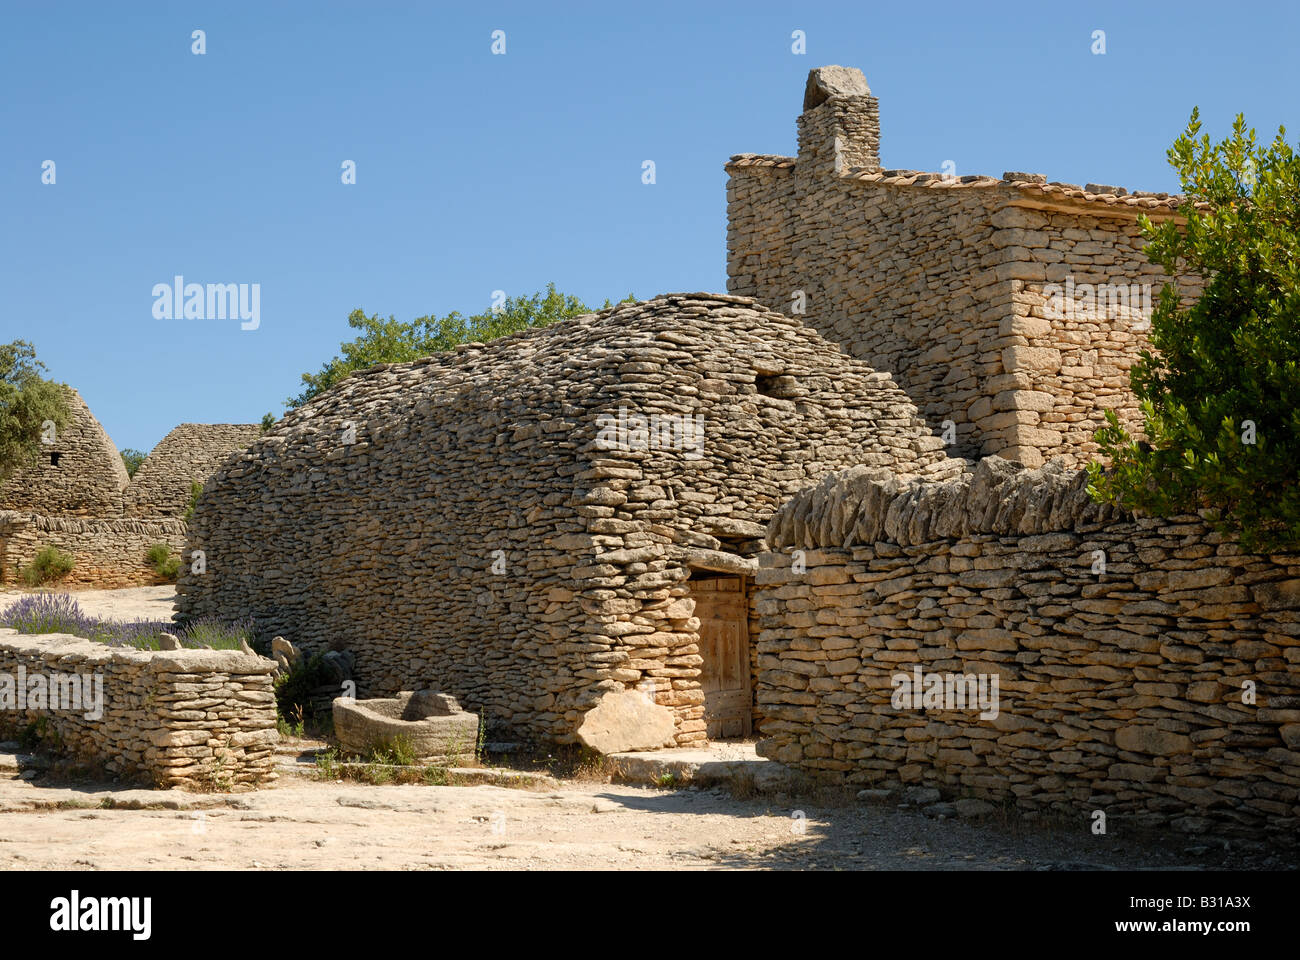 Village médiéval de bories, dans le sud de la France Banque D'Images